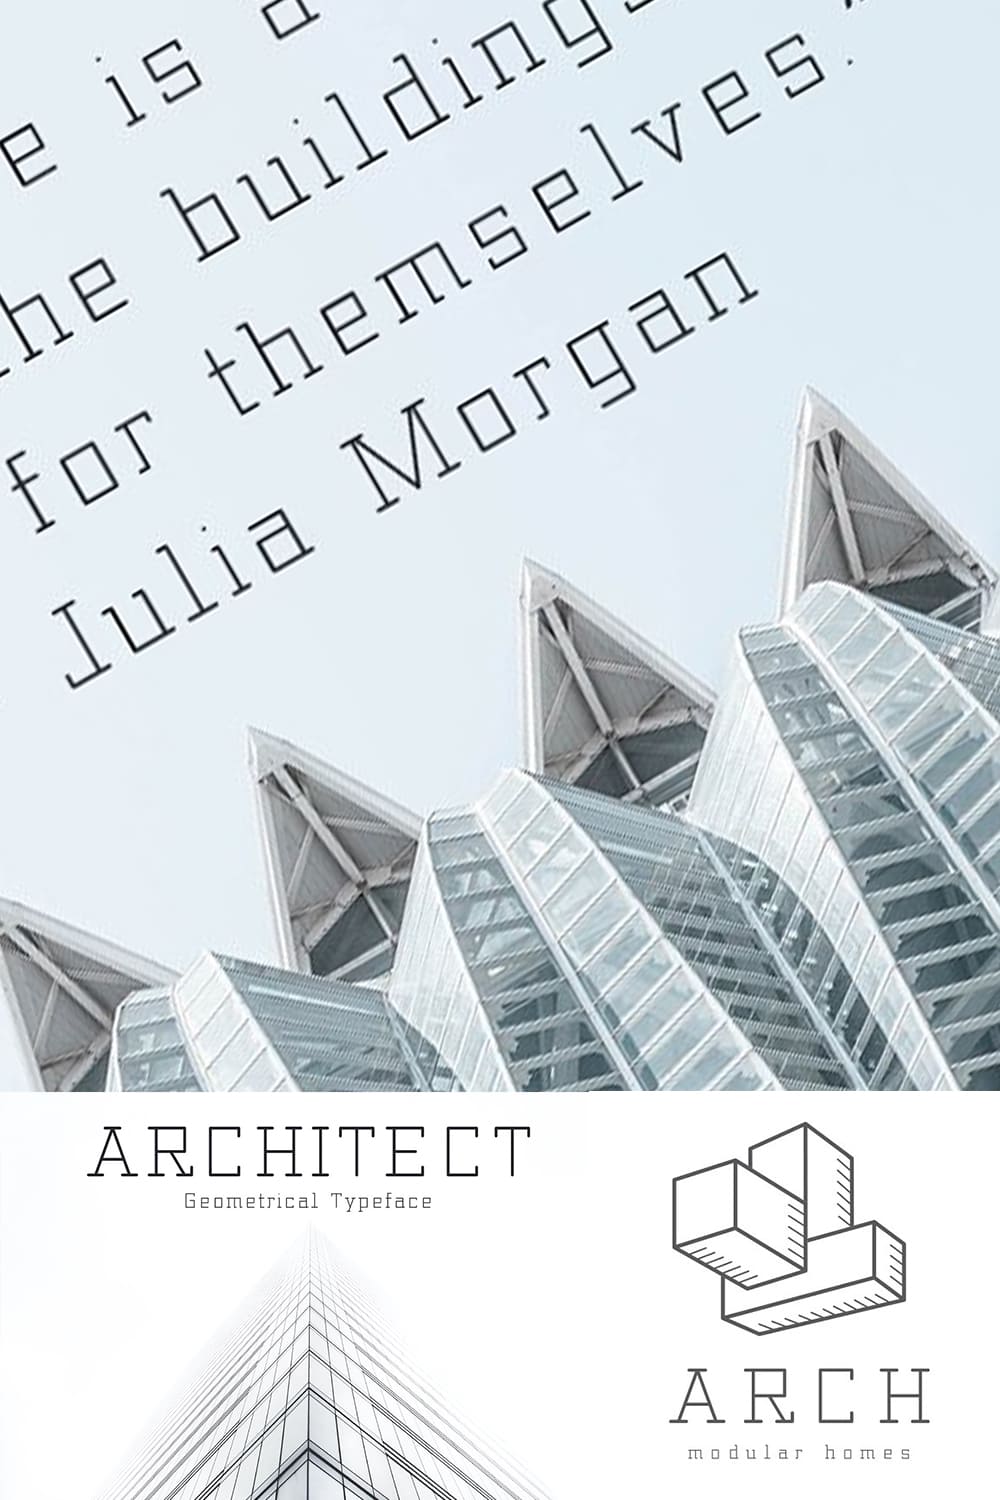 Architect - Geometrical Typeface - Pinterest.